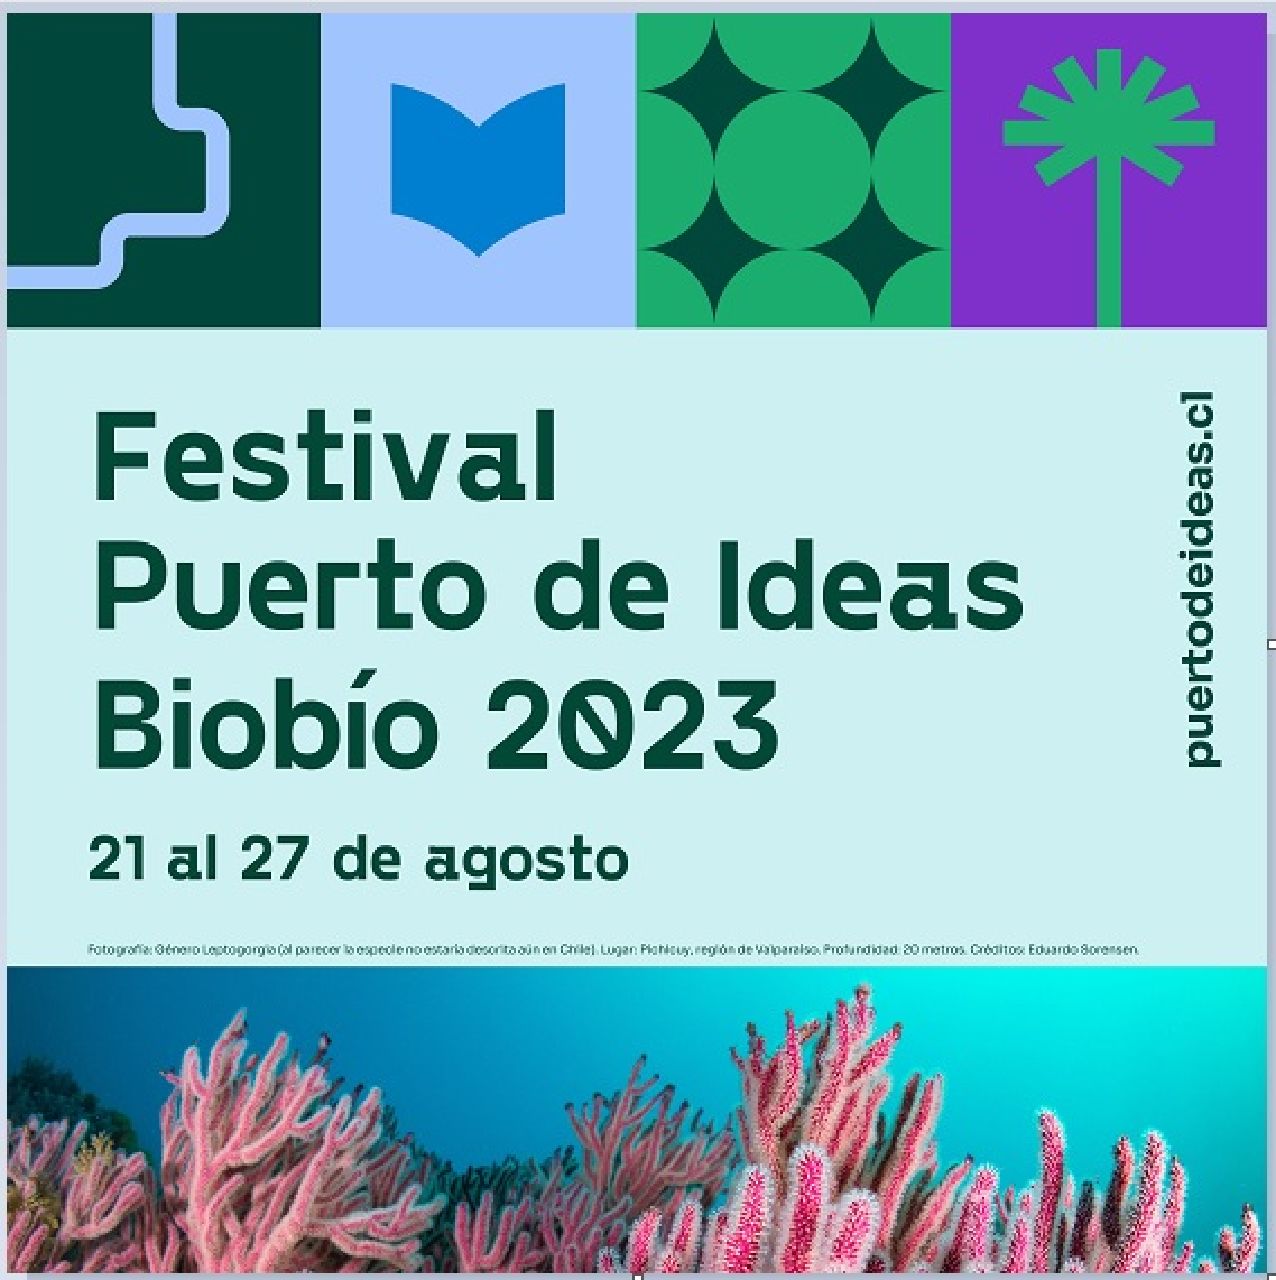 Literatura, ciencia y naturaleza se conectan en Puerto de Ideas Biobío 2023